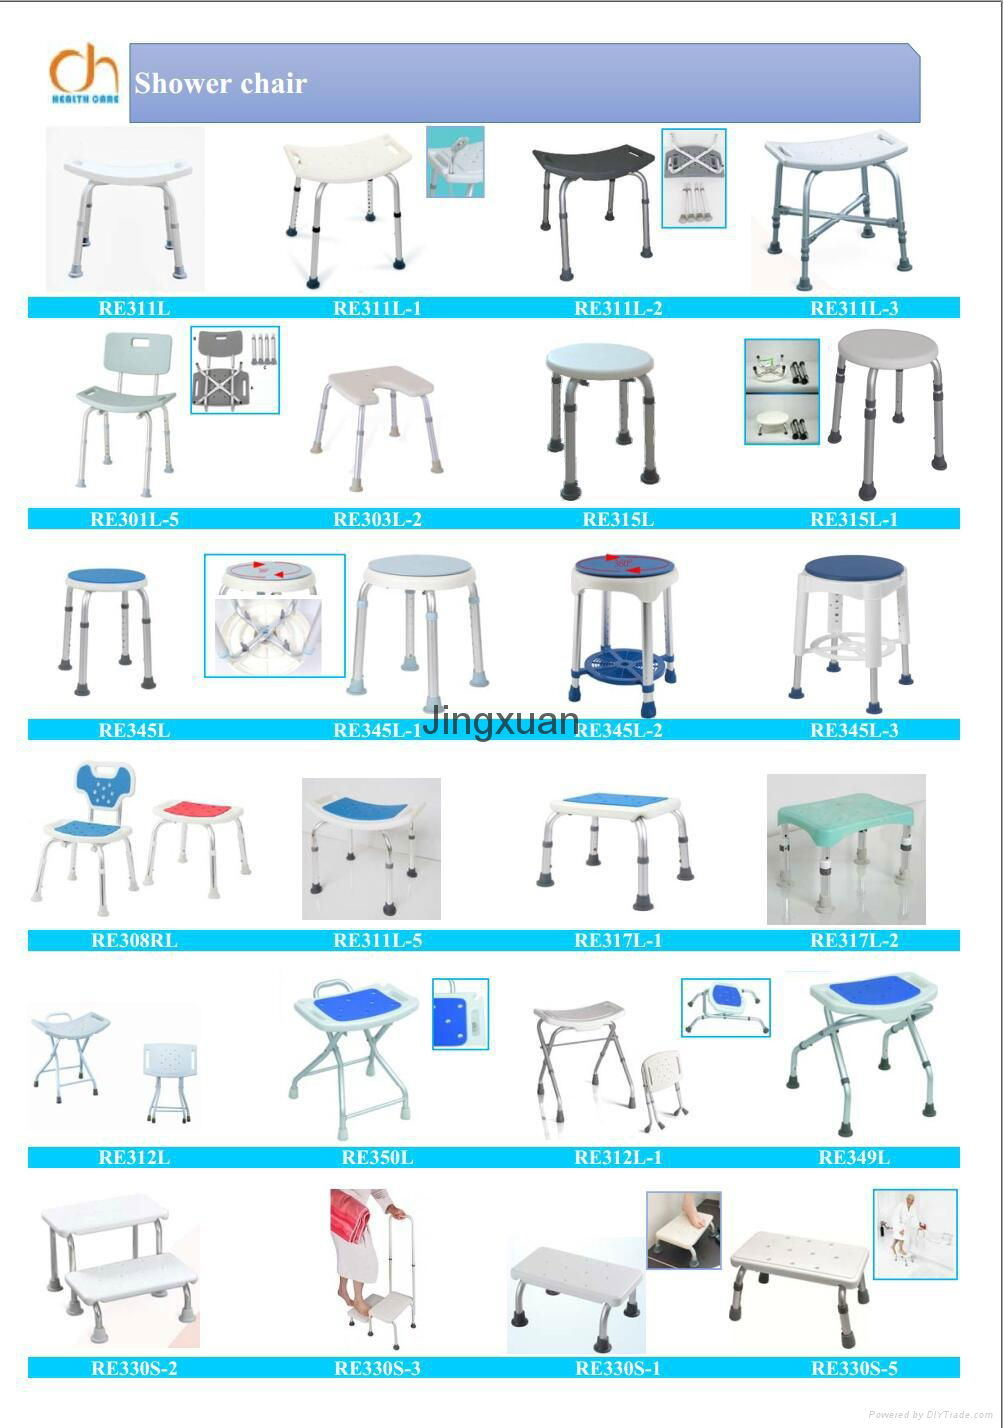 aluminum shower chair bath stool bathroom items